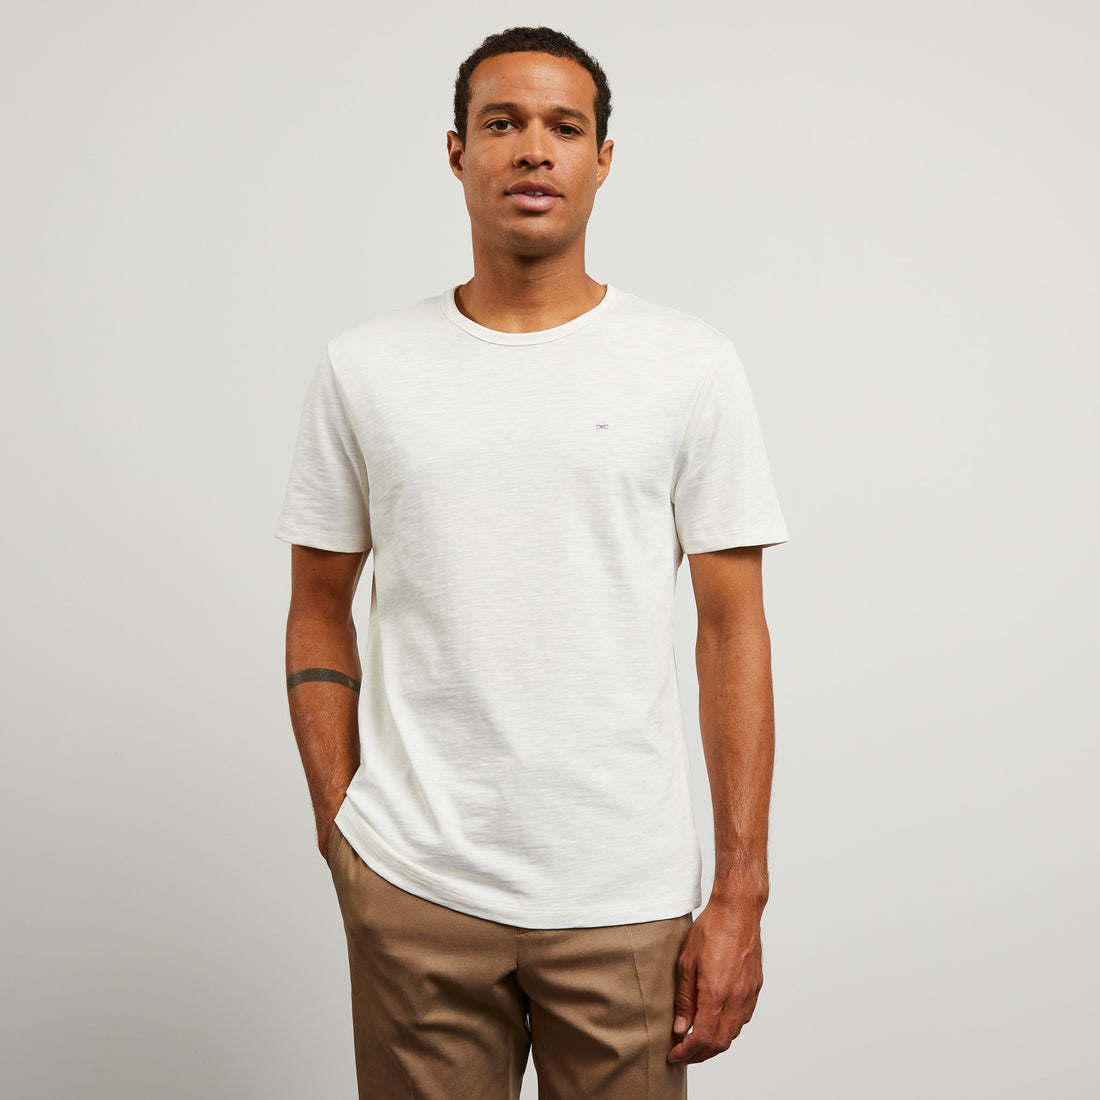 Plain White Short-Sleeved T-Shirt